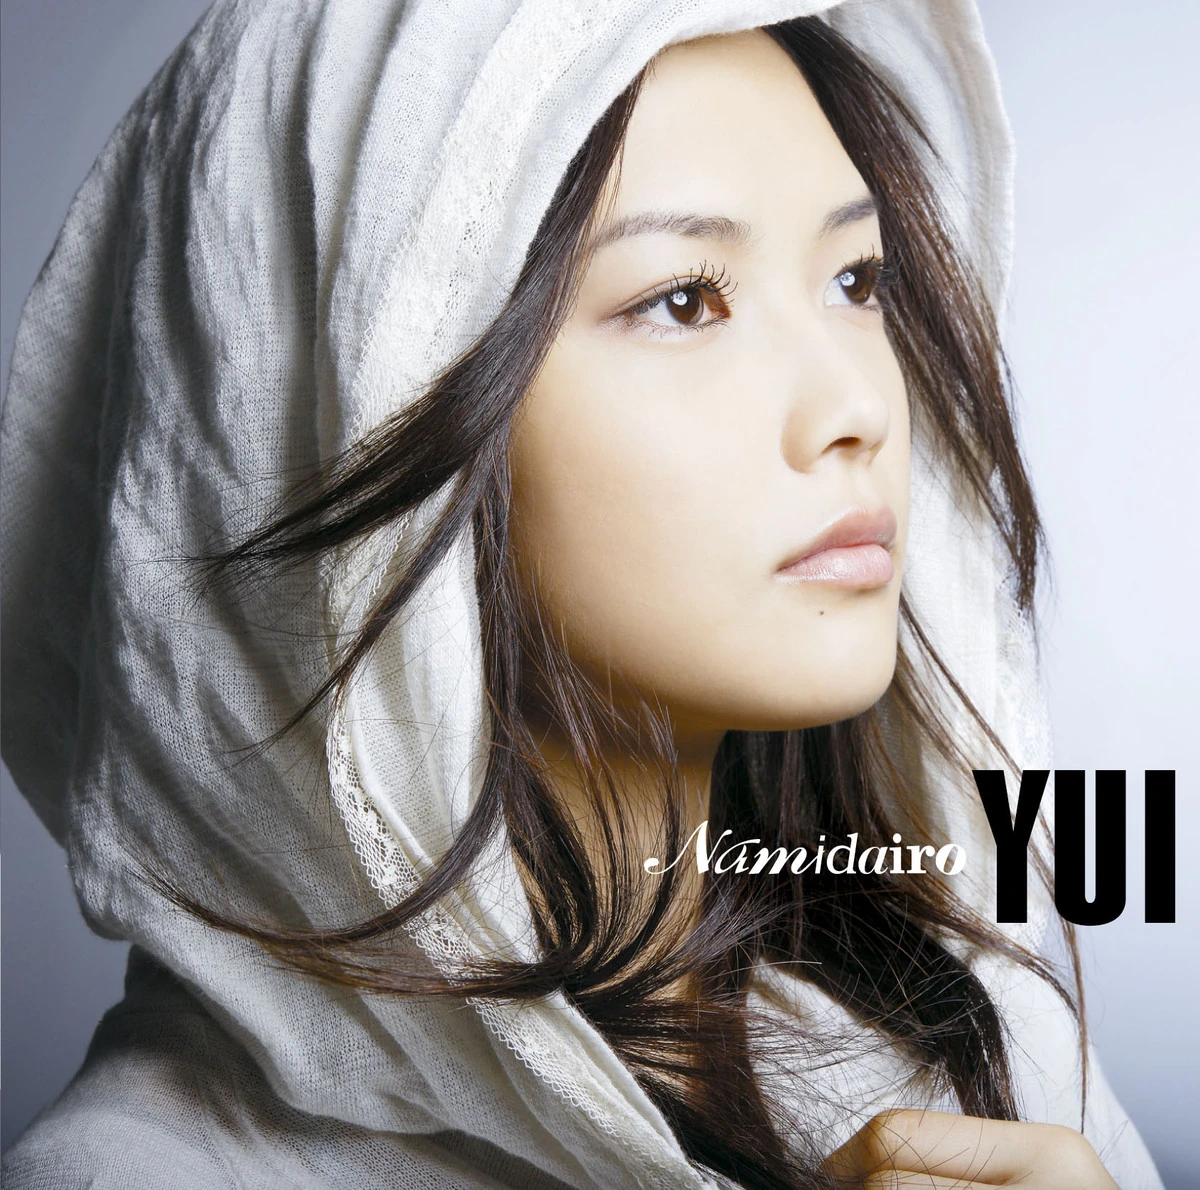 "Pochette du single de Yui Namidero"